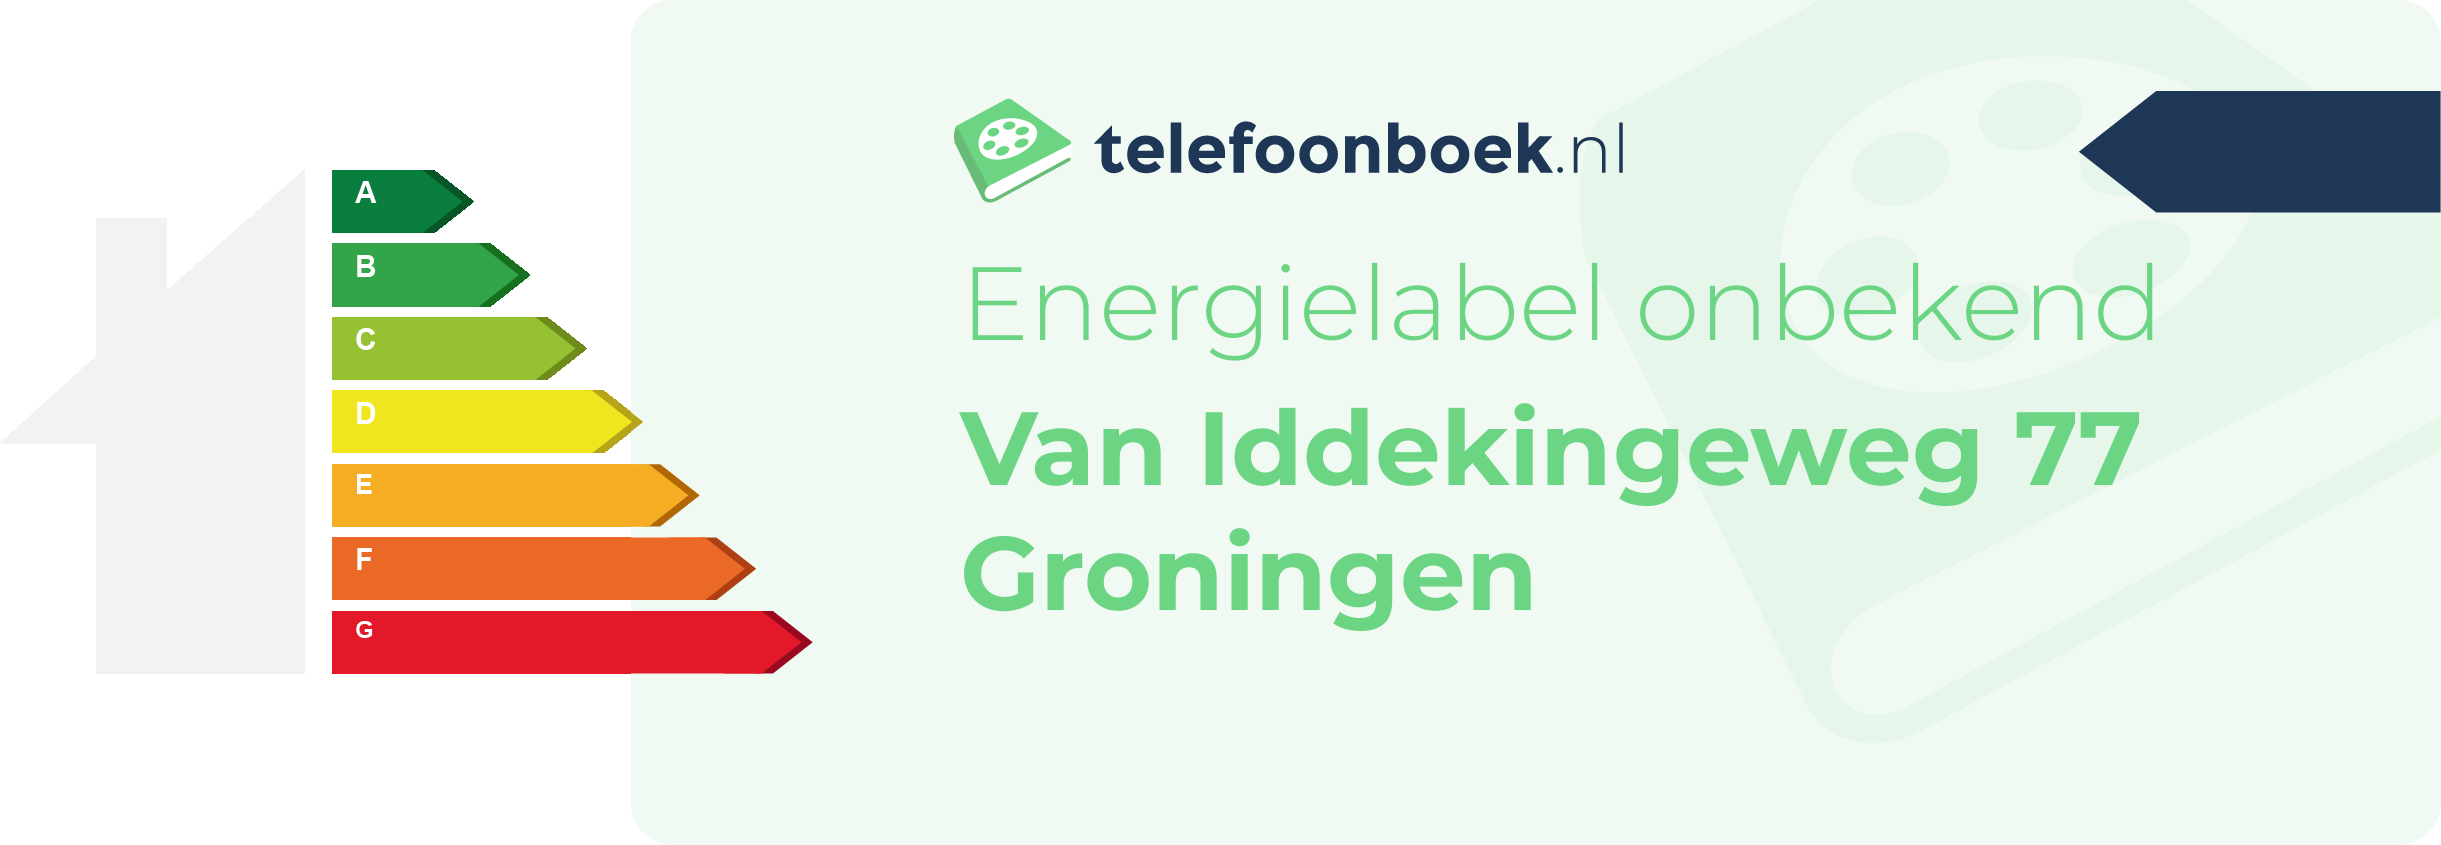 Energielabel Van Iddekingeweg 77 Groningen